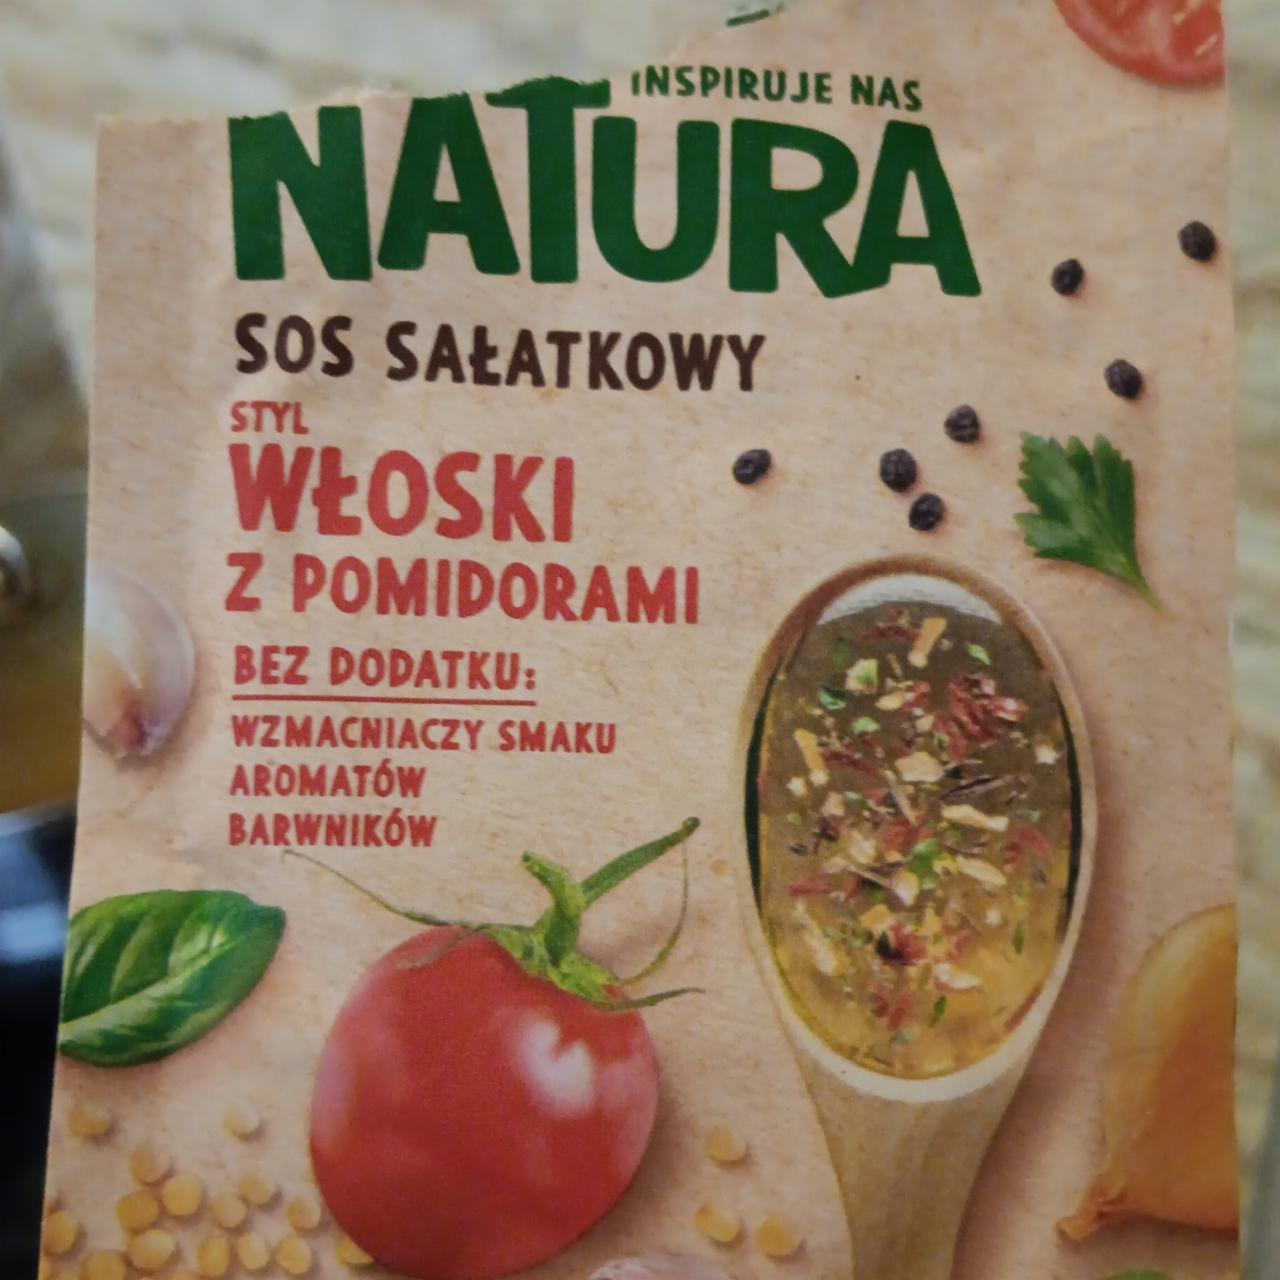 Fotografie - Sos salatkowy styl wloski z pomidorami Natura